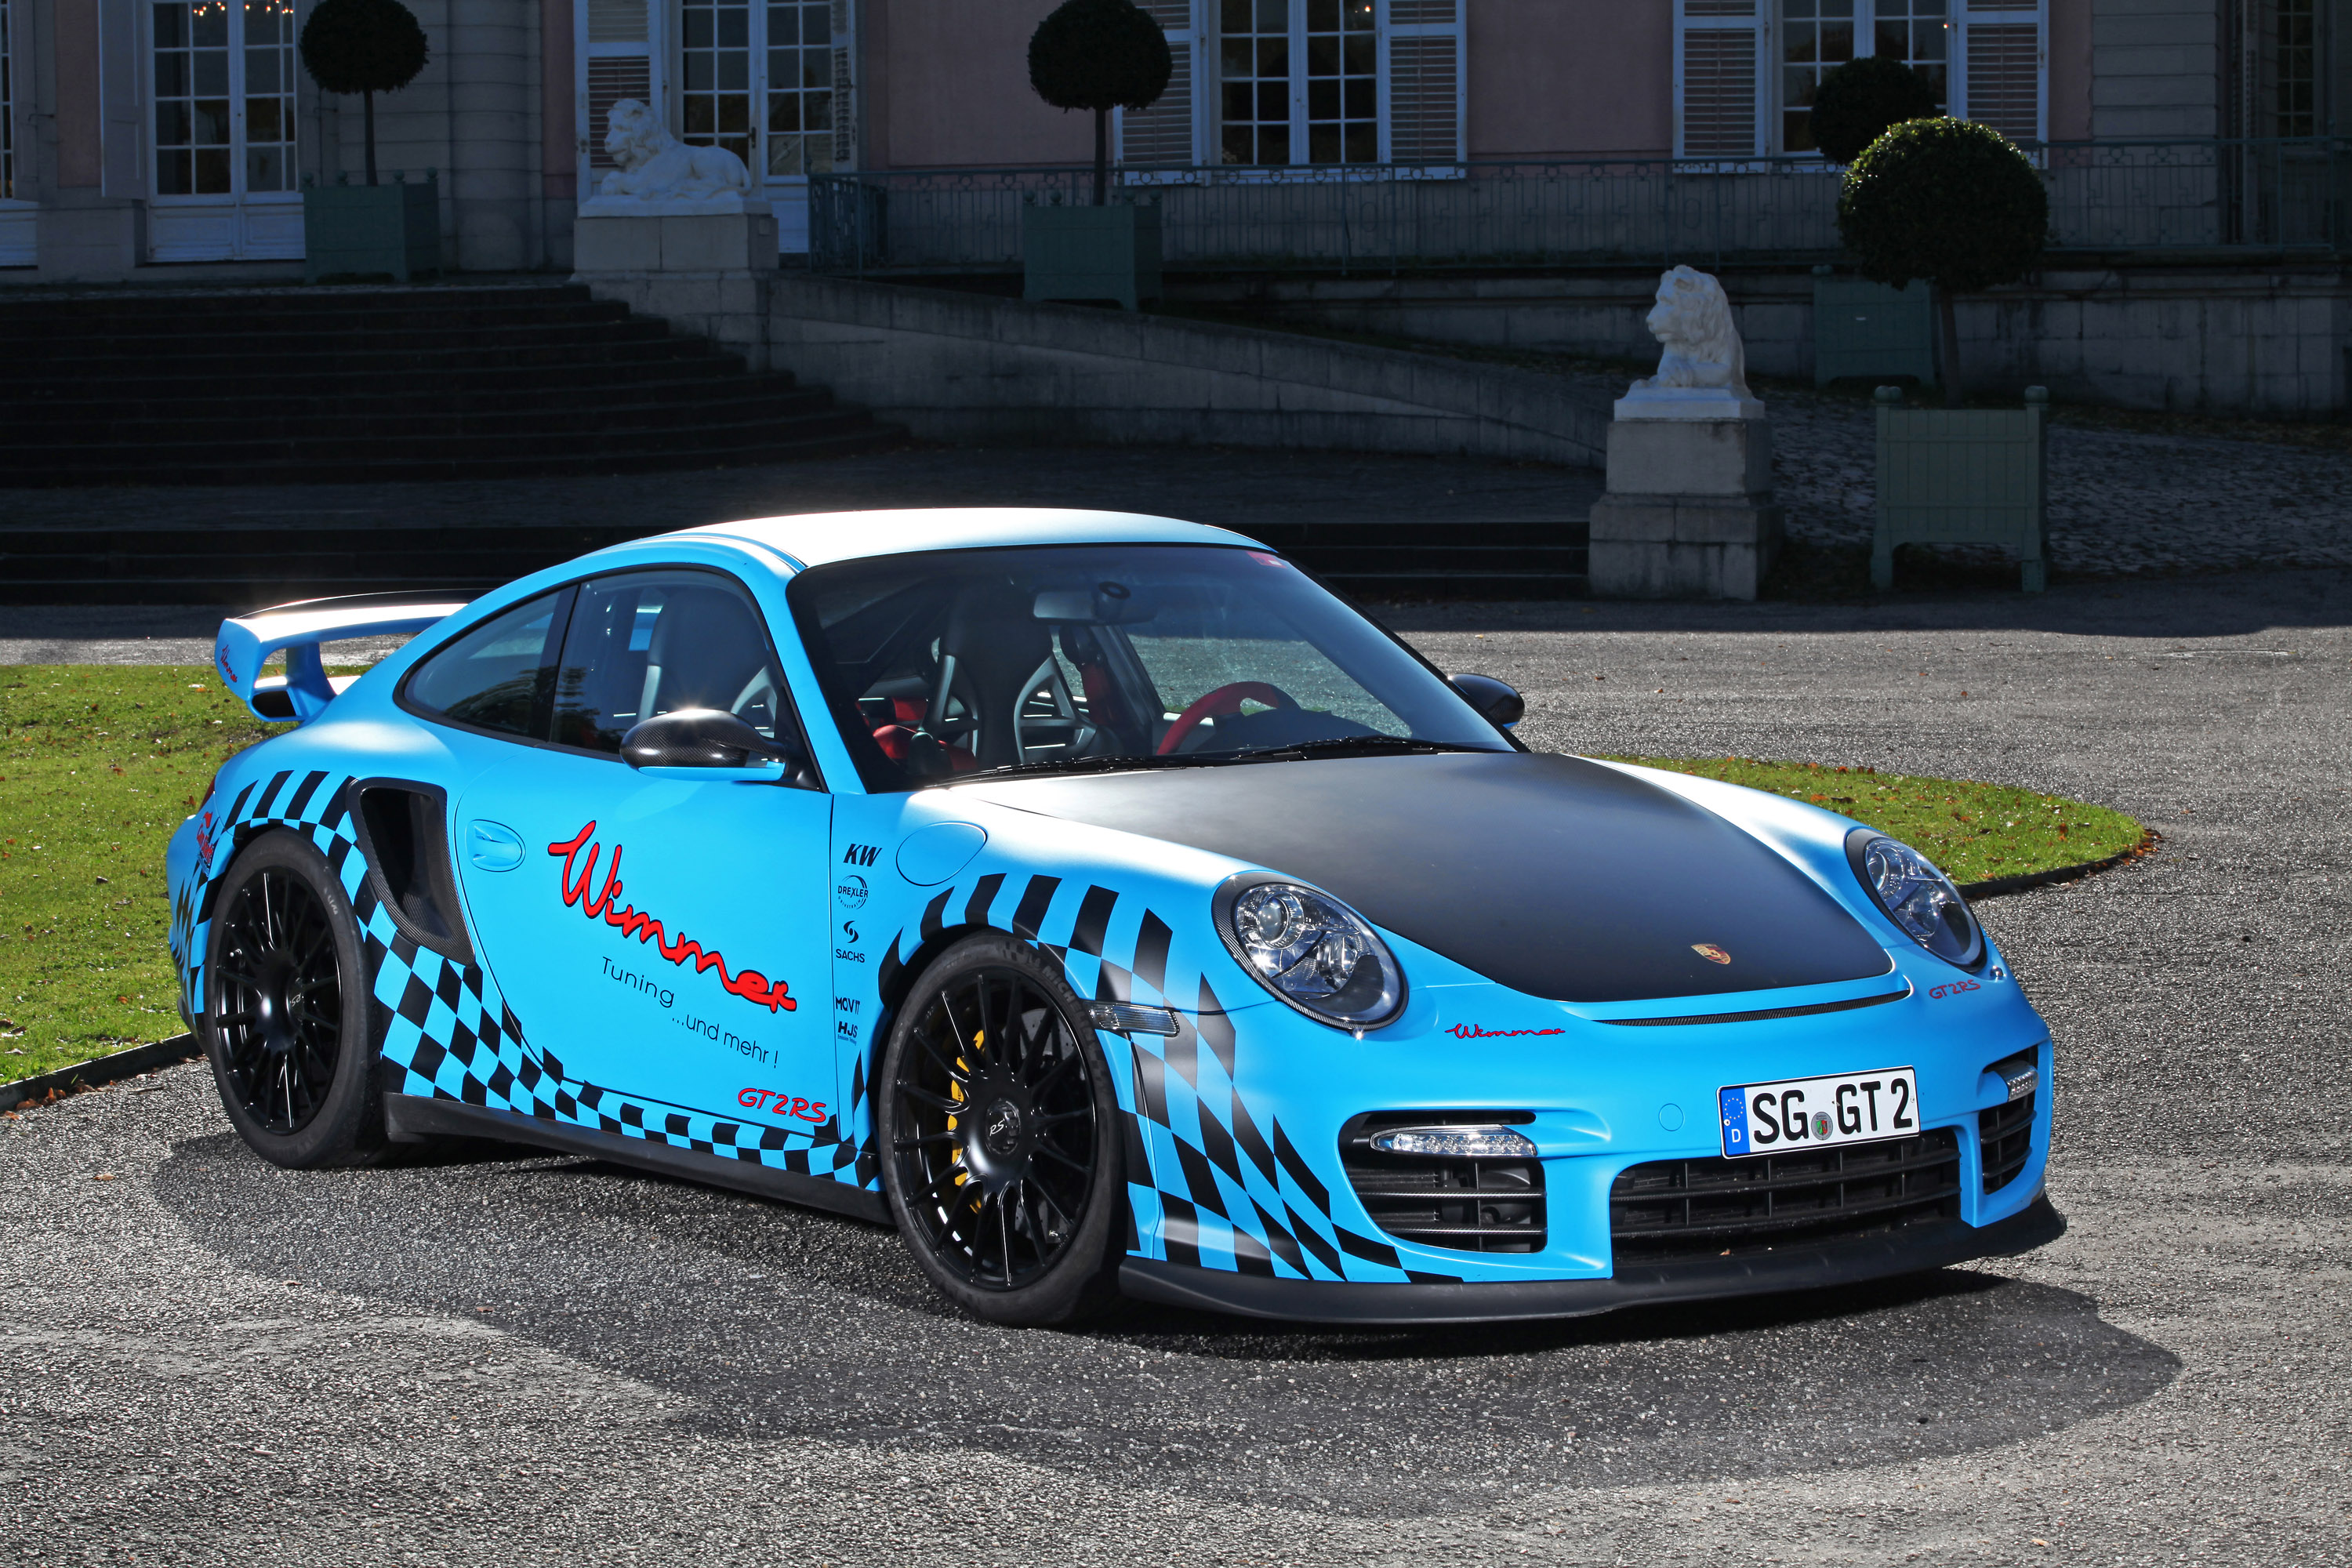 Télécharger des fonds d'écran Porsche 911 Gt2 HD